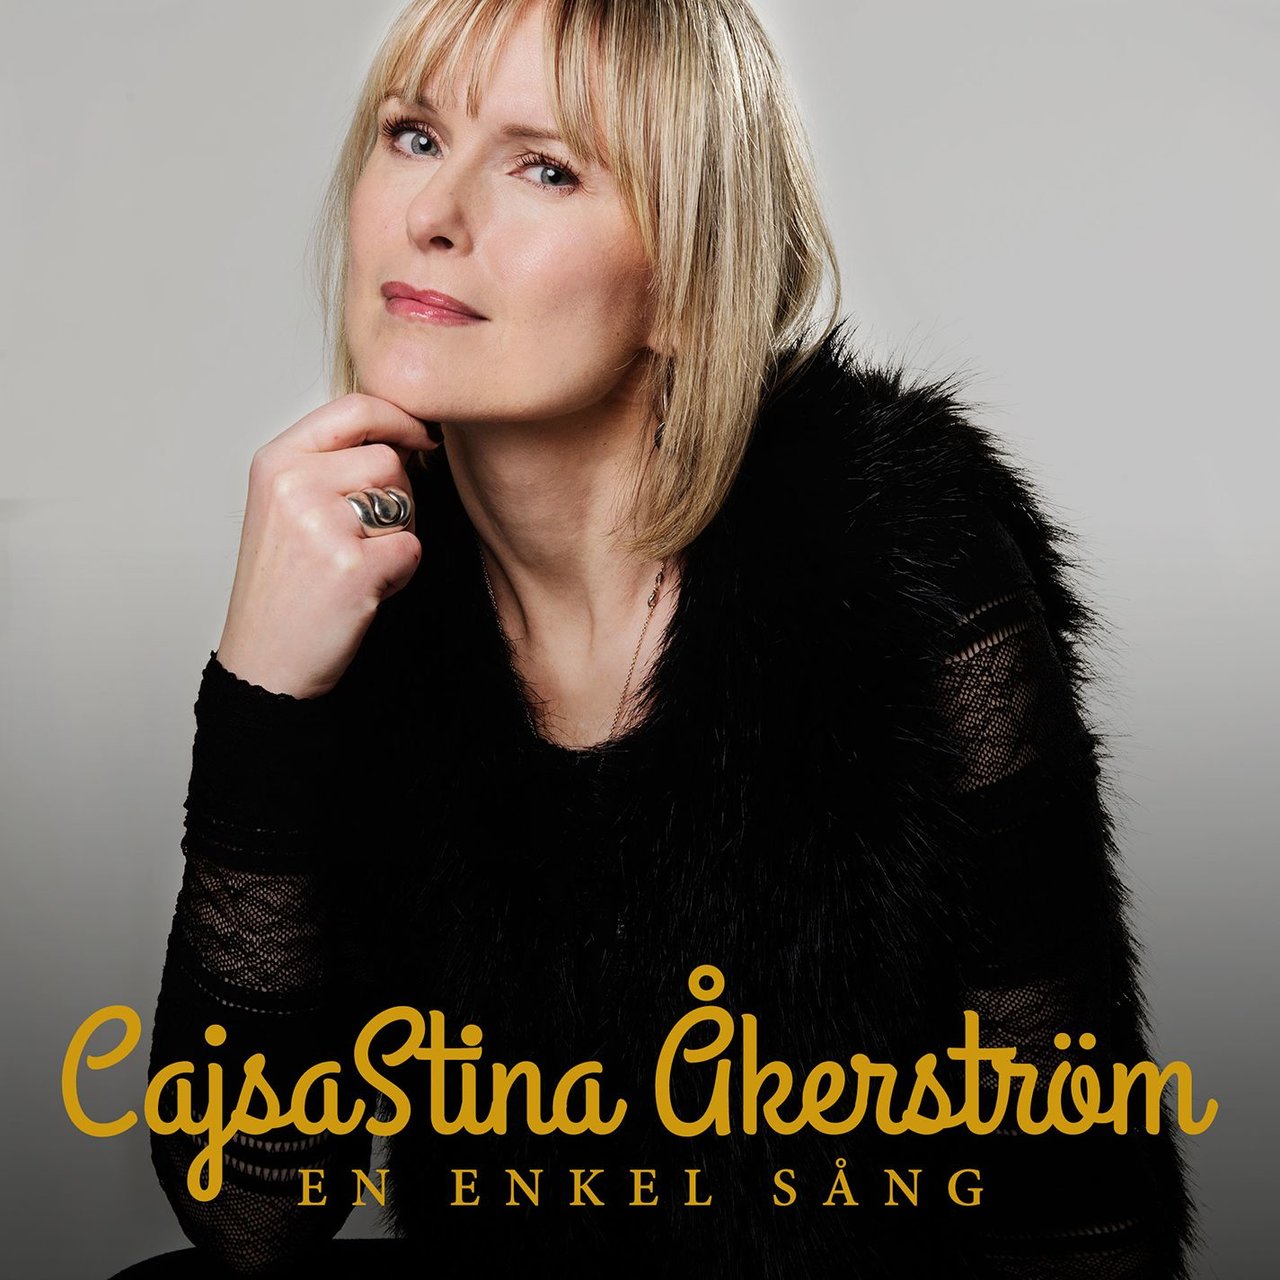 CajsaStina Åkerström En enkel sång cover artwork